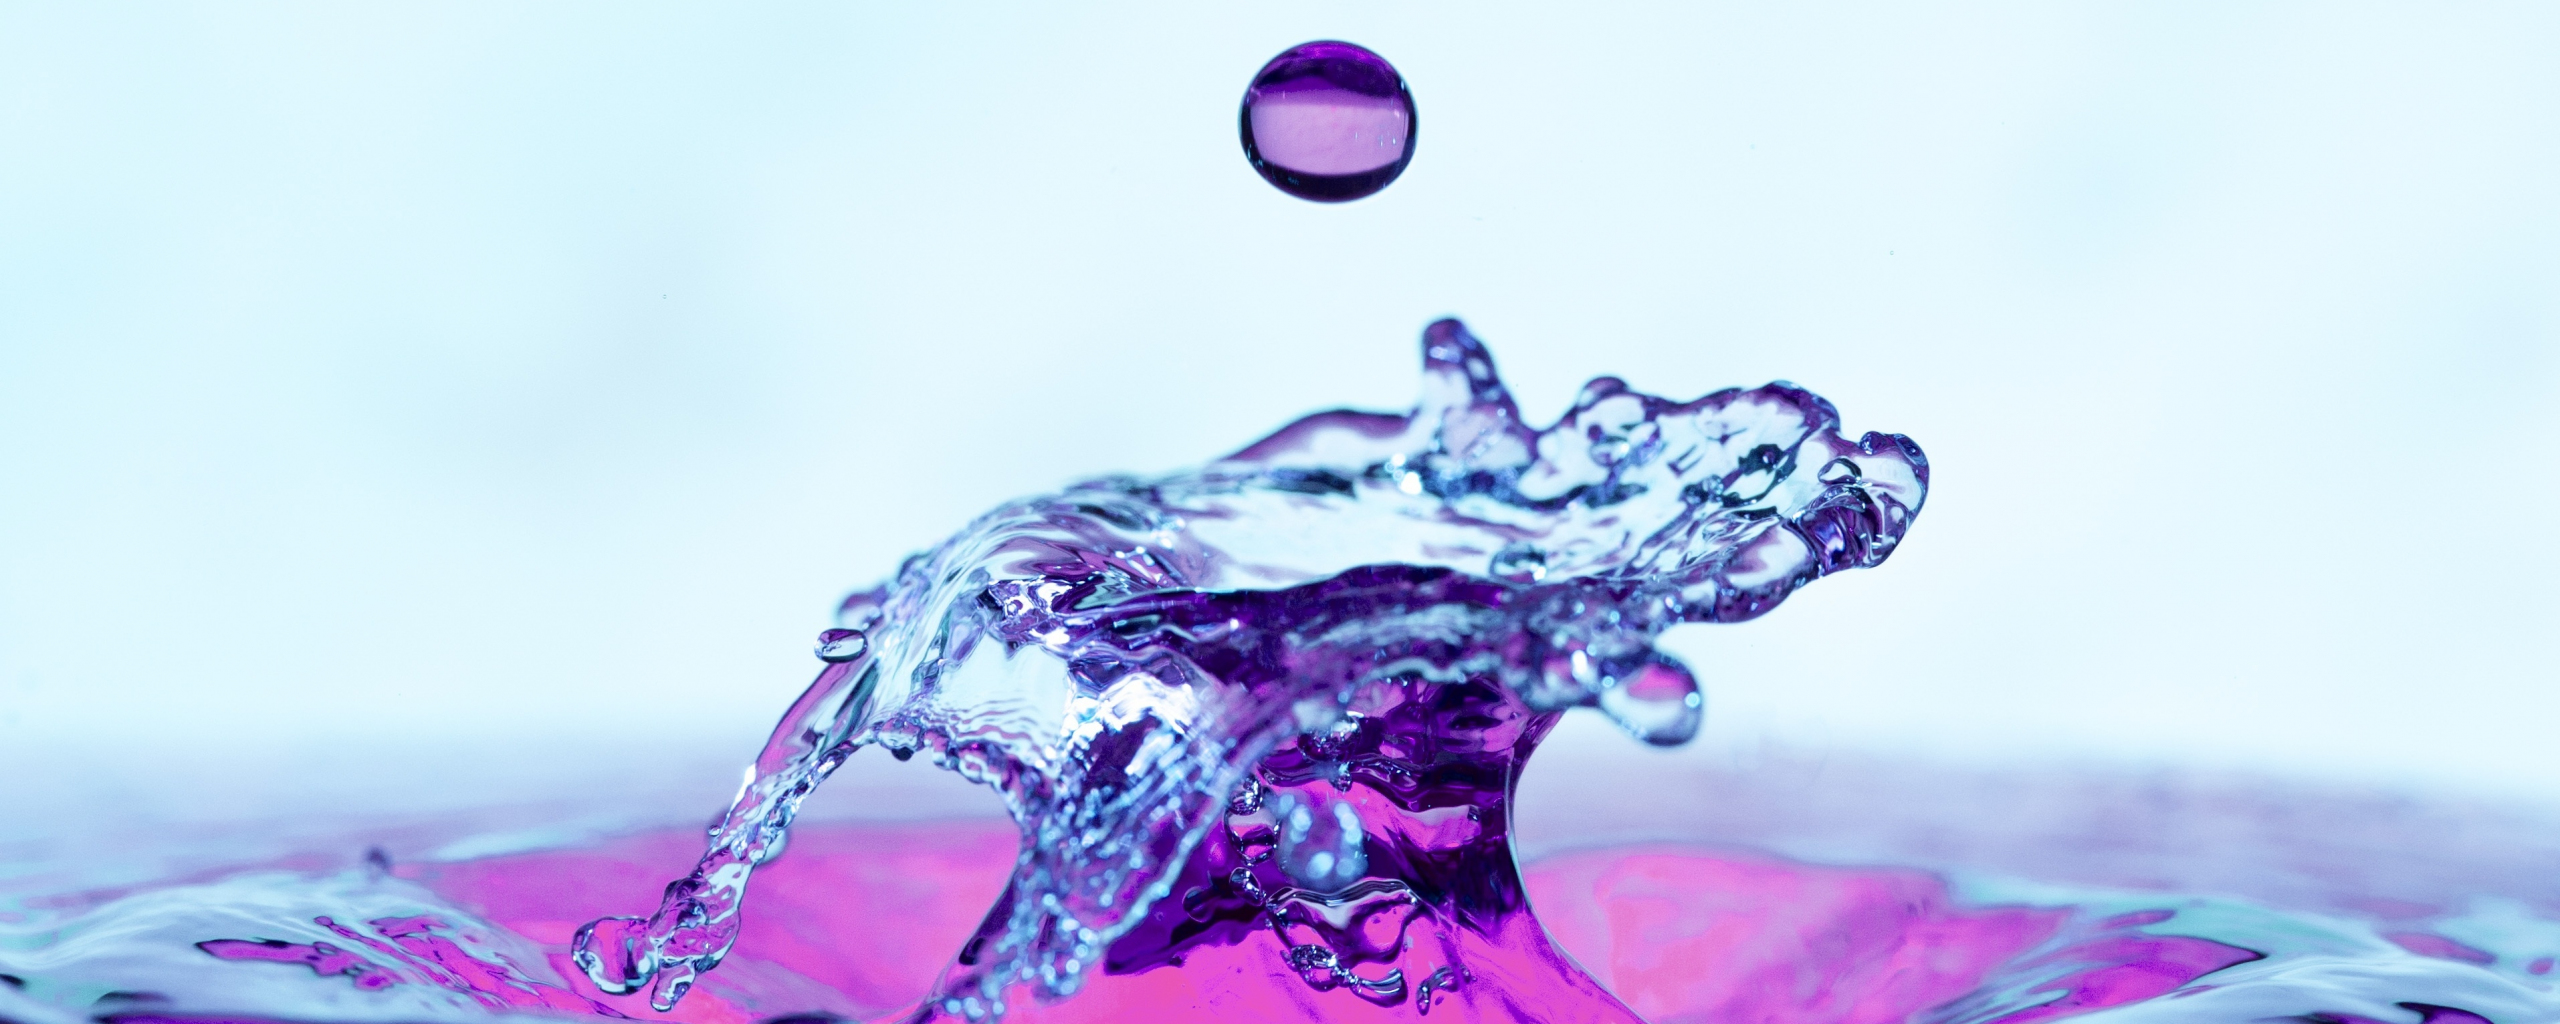 Download wallpaper 2560x1024 violet-transparent, liquid splash, close ...